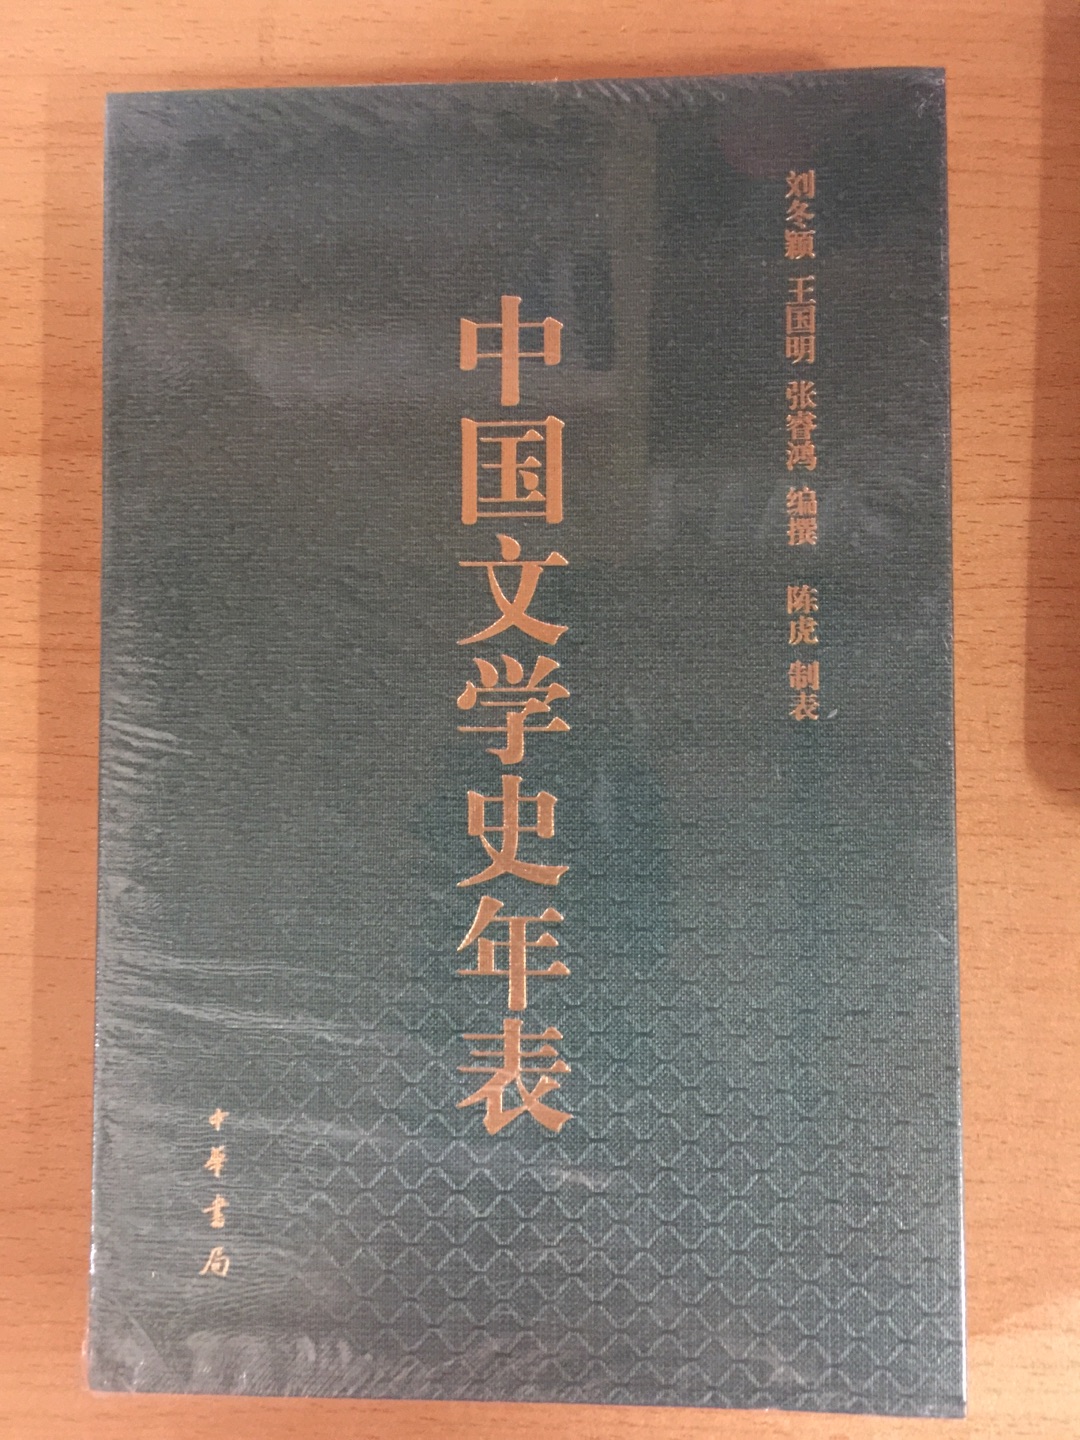 这本书对于了解中国文学史大有帮助，装帧精装、内容丰富，值得推荐！